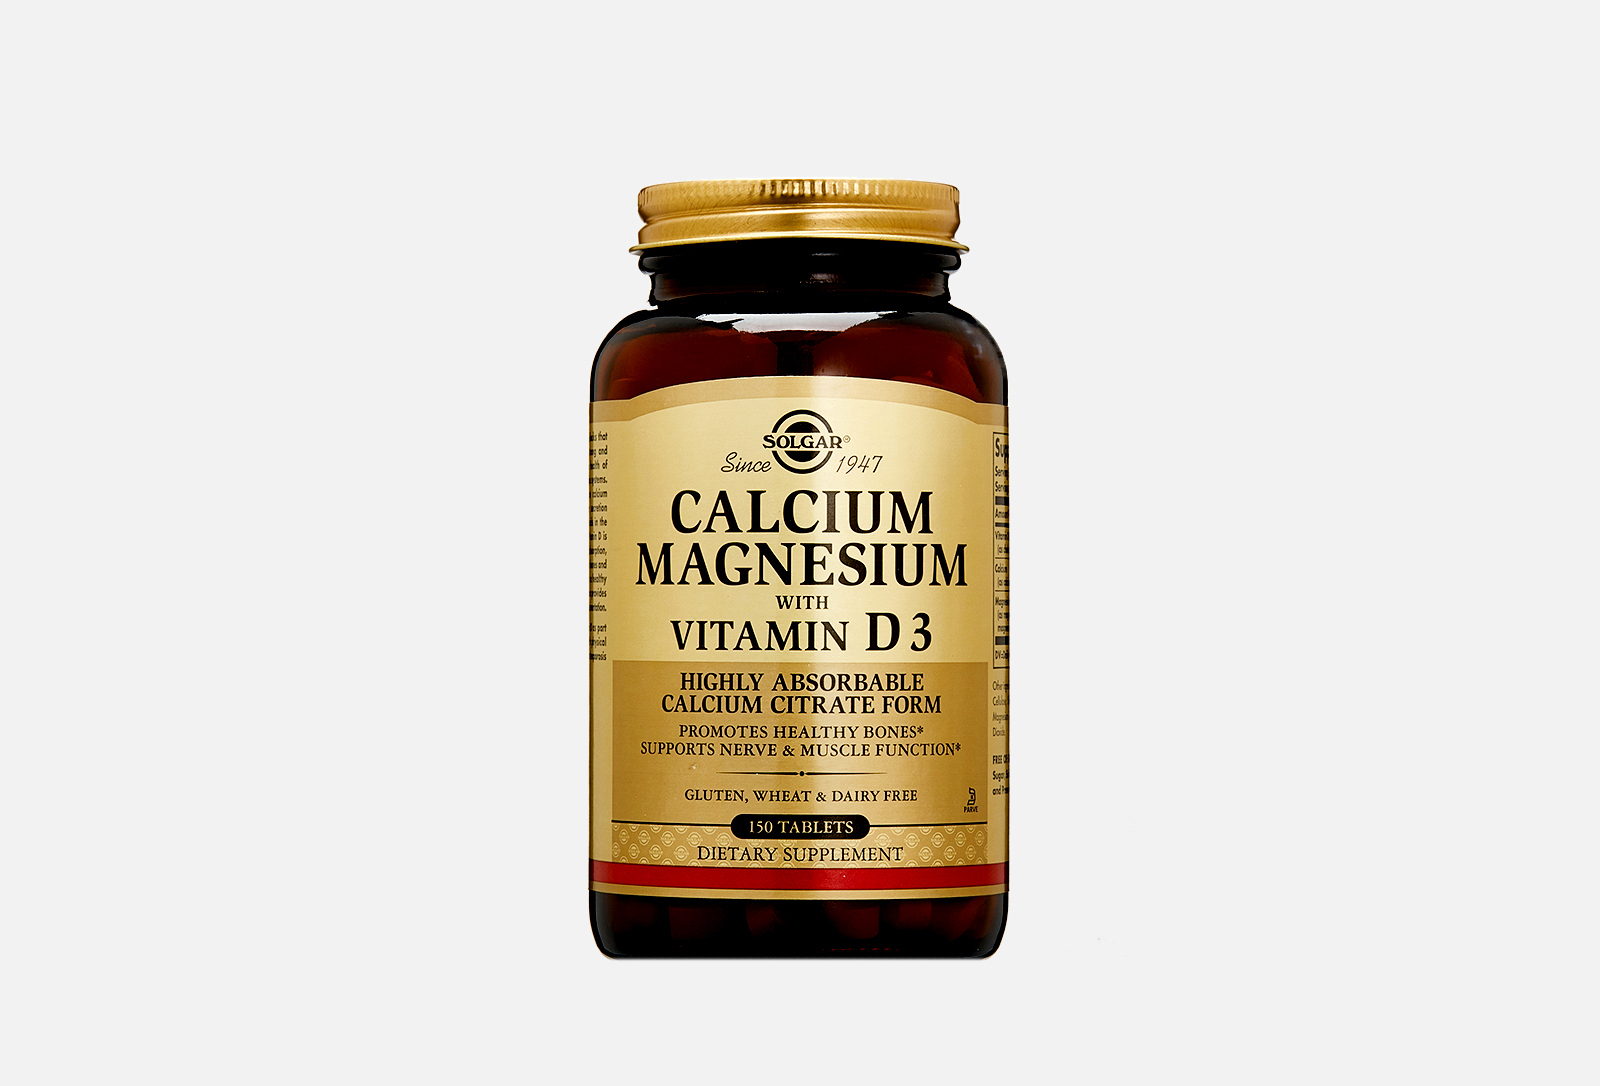 Calcium magnesium with vitamin d3 отзывы